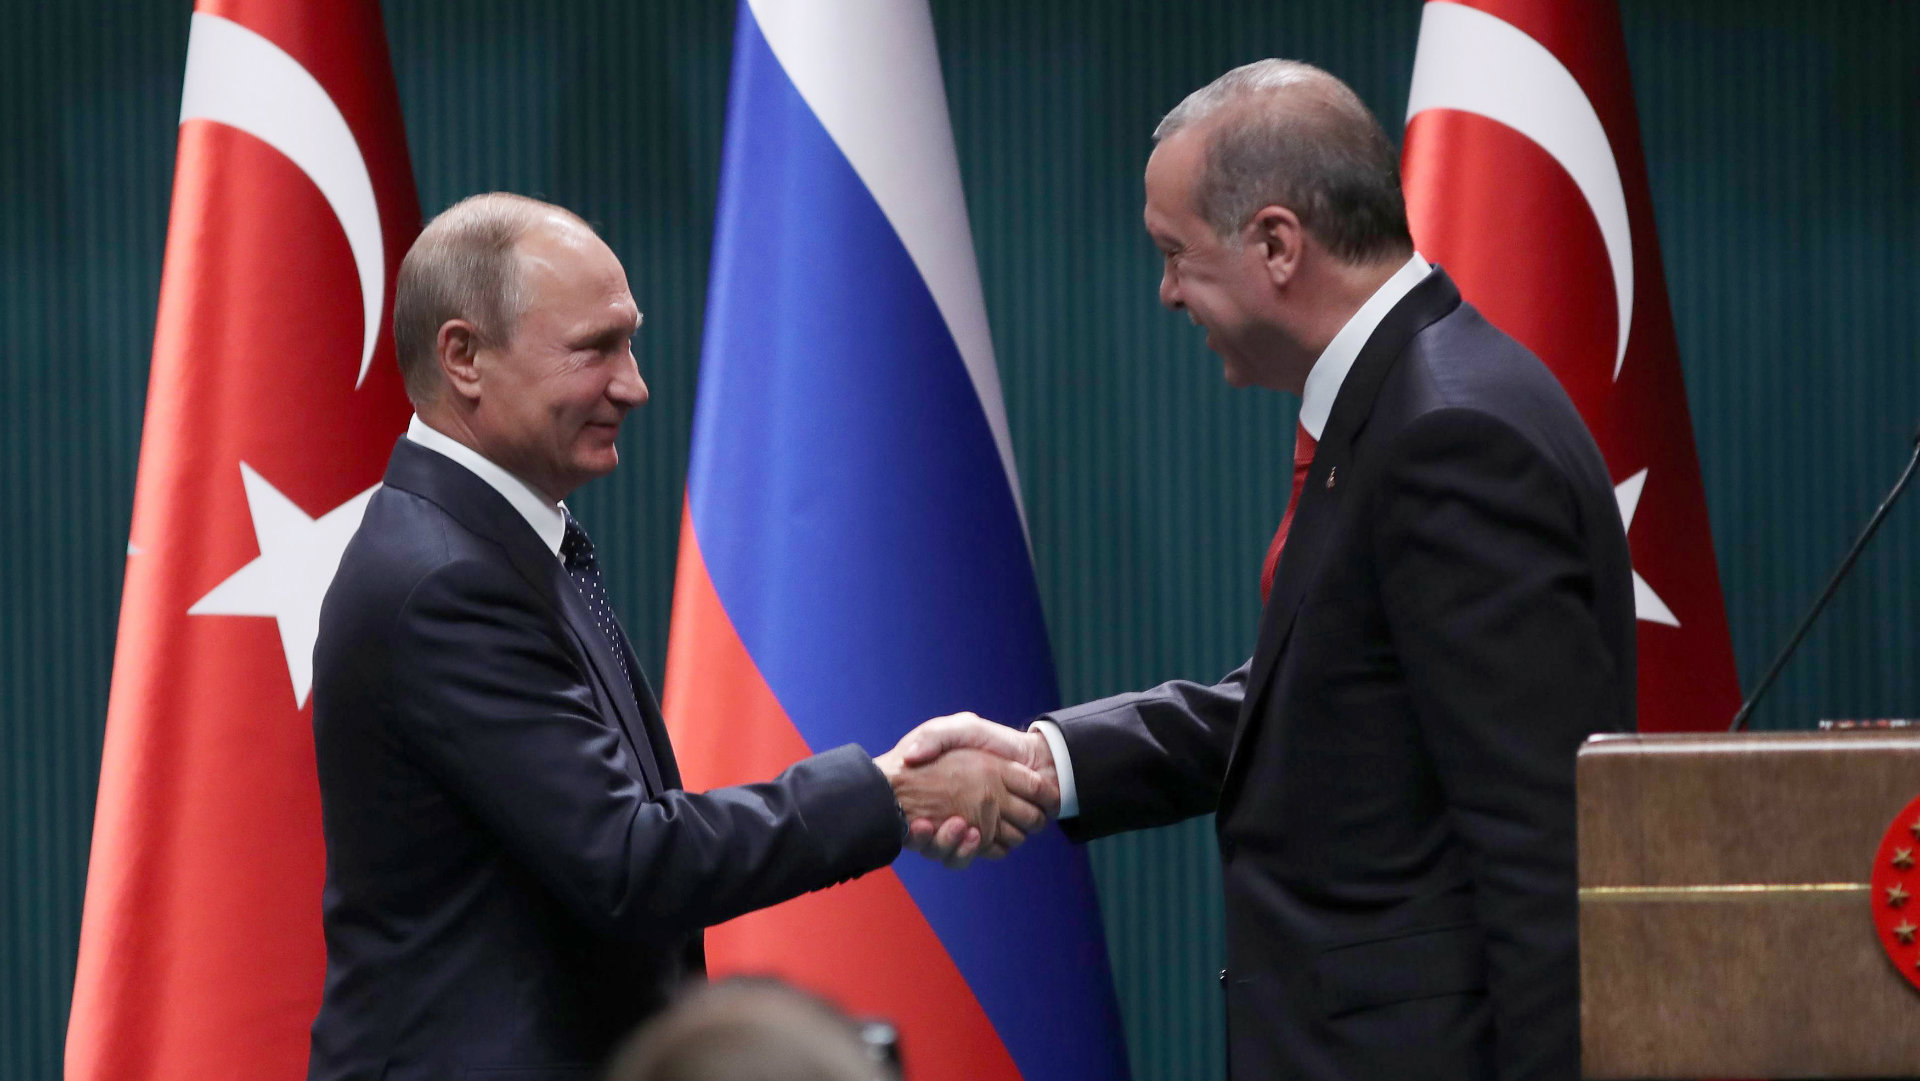 Putin promete mayor cooperación con Turquía para el alto el fuego en Siria